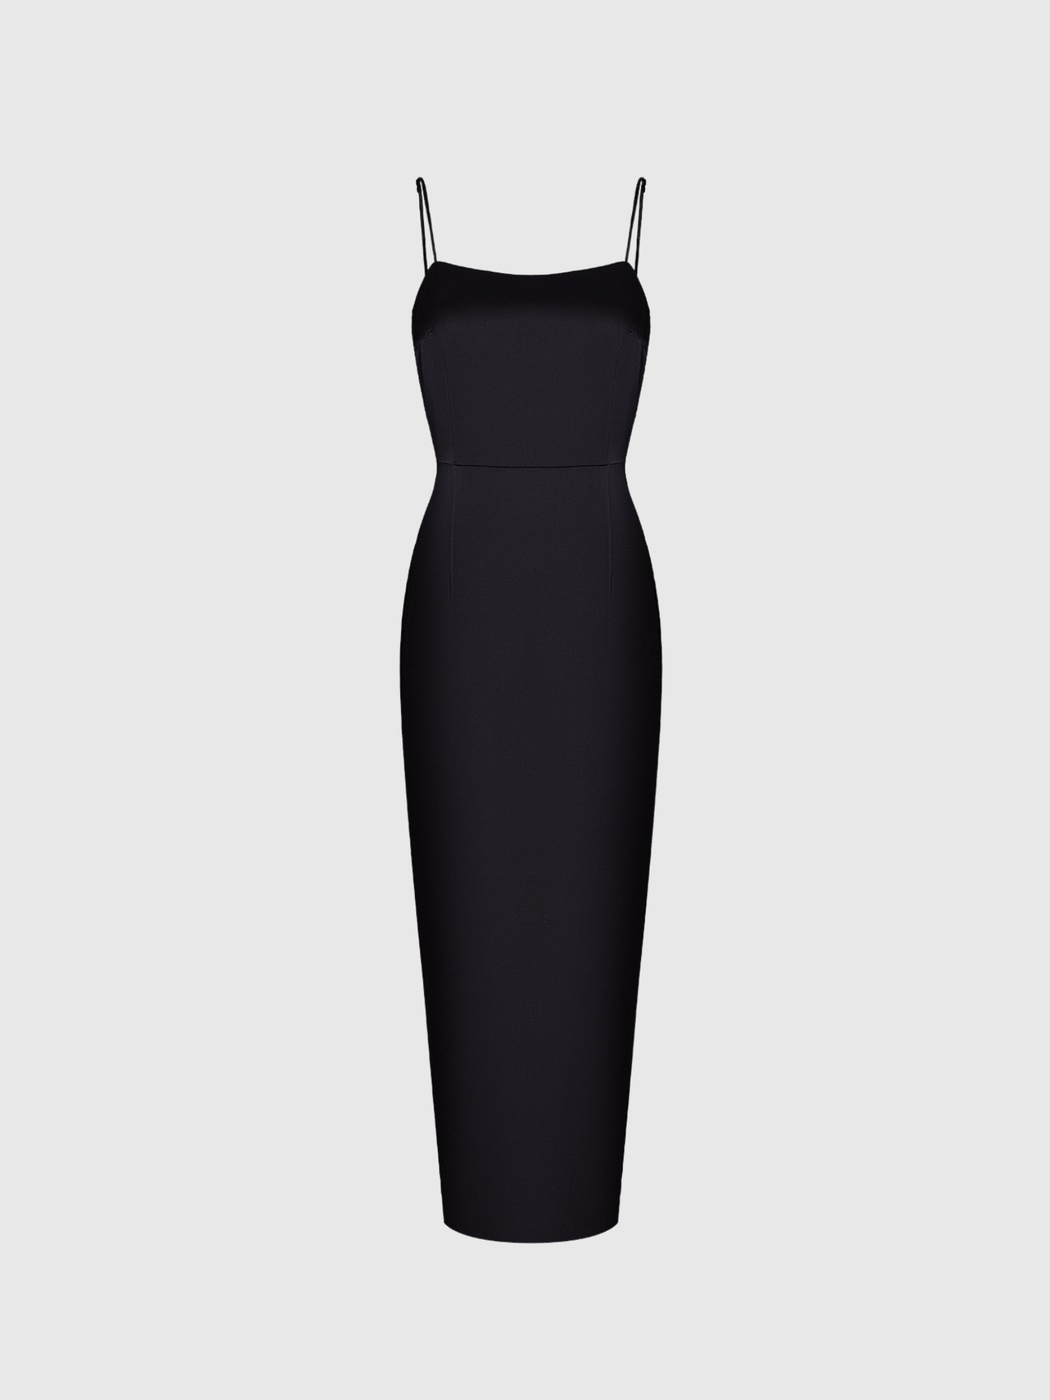 Slip dress - Namelazz Official Online Store